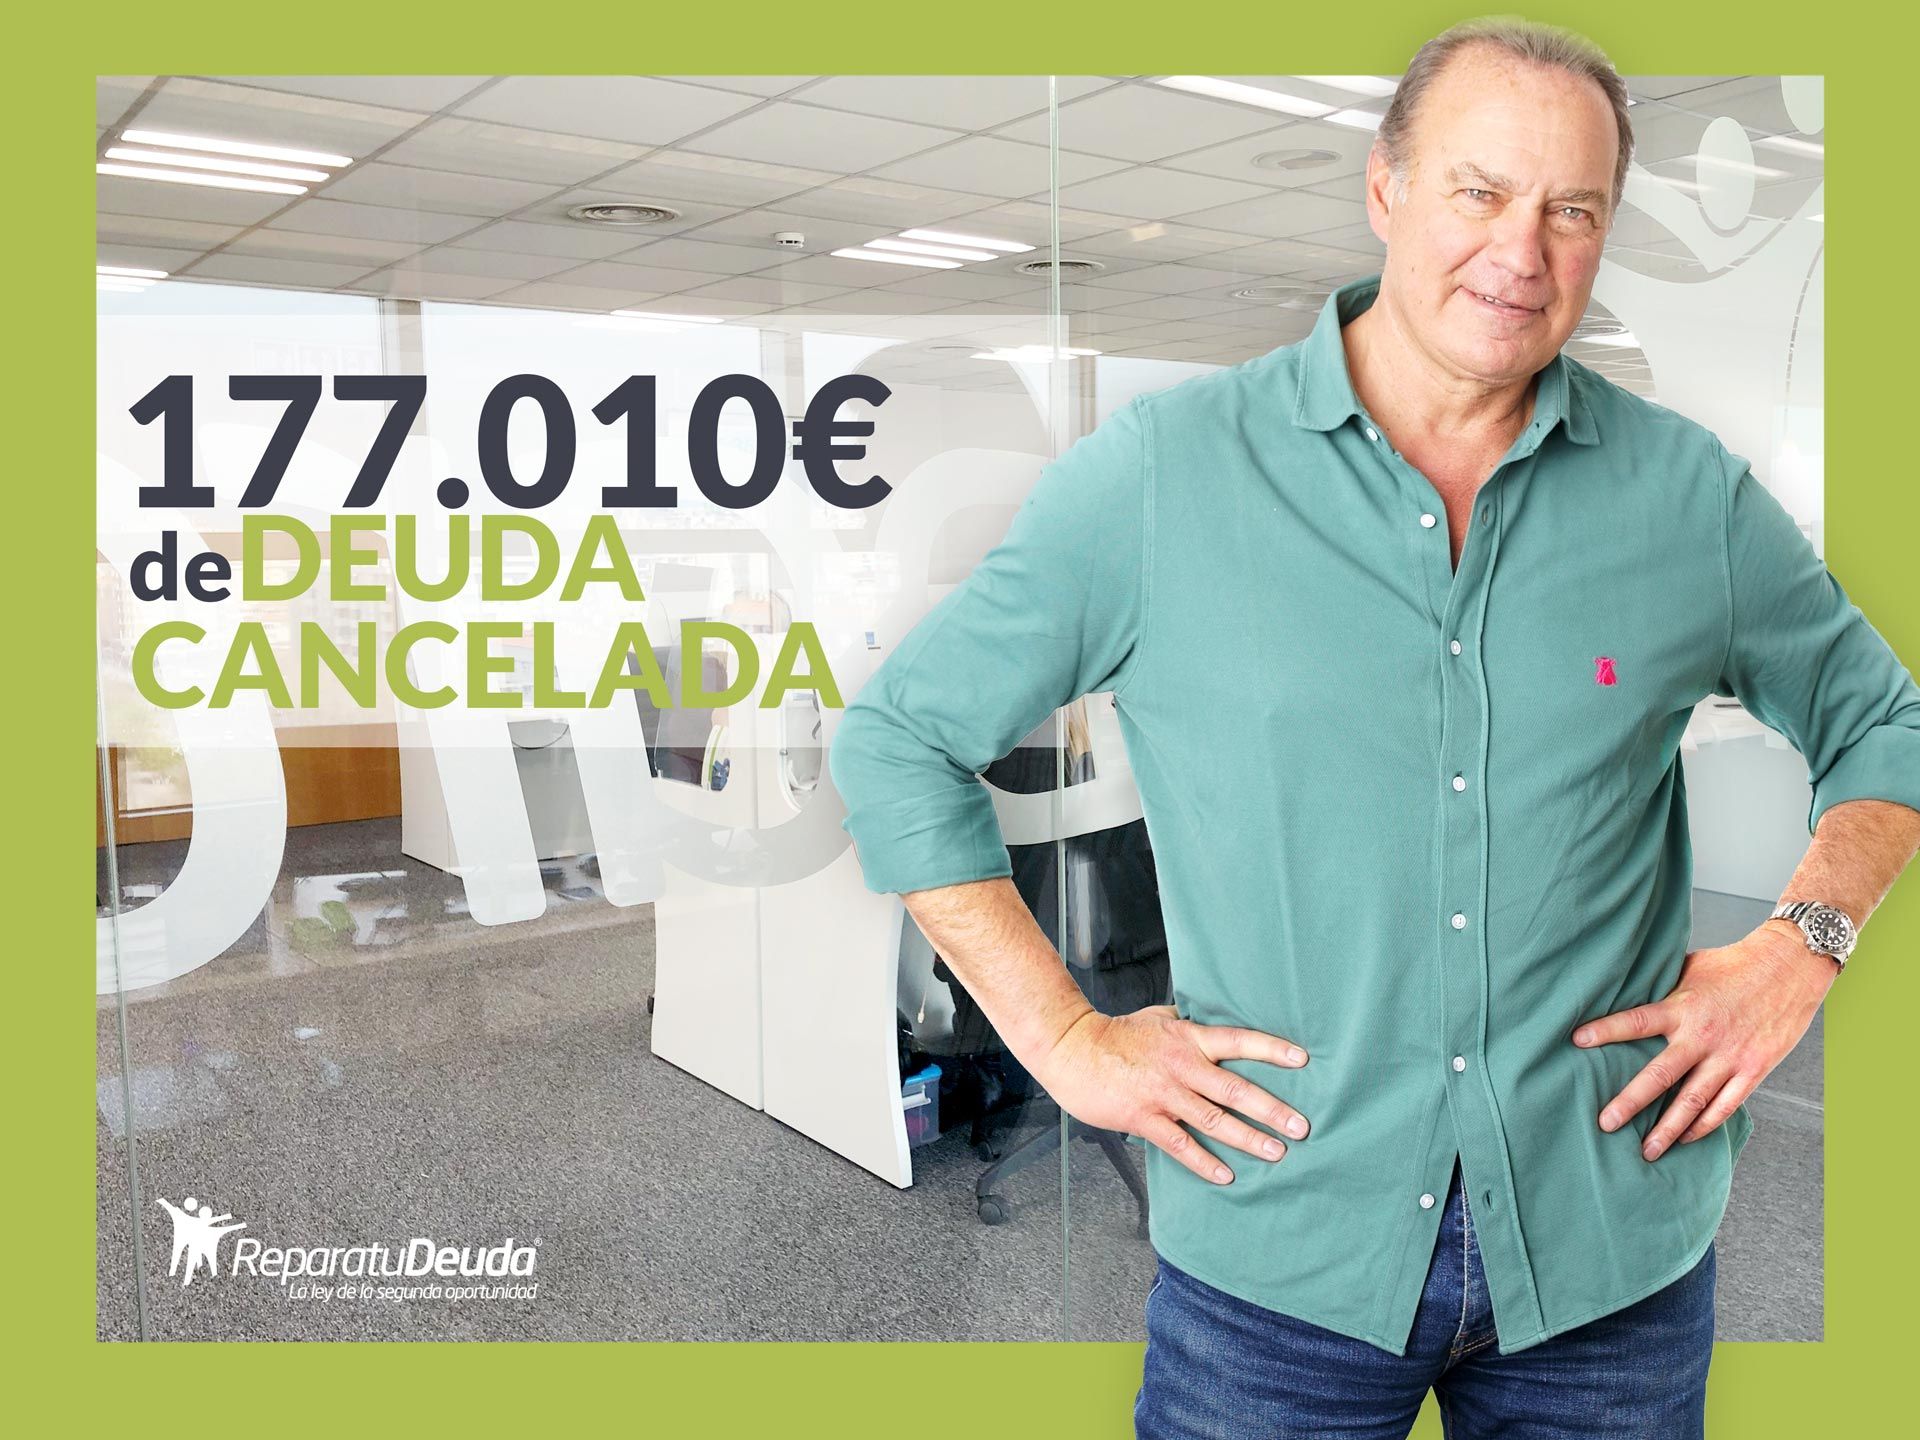 Repara tu Deuda Abogados cancela 177.010 ? en Carcaixent (Valencia) con la Ley de Segunda Oportunidad